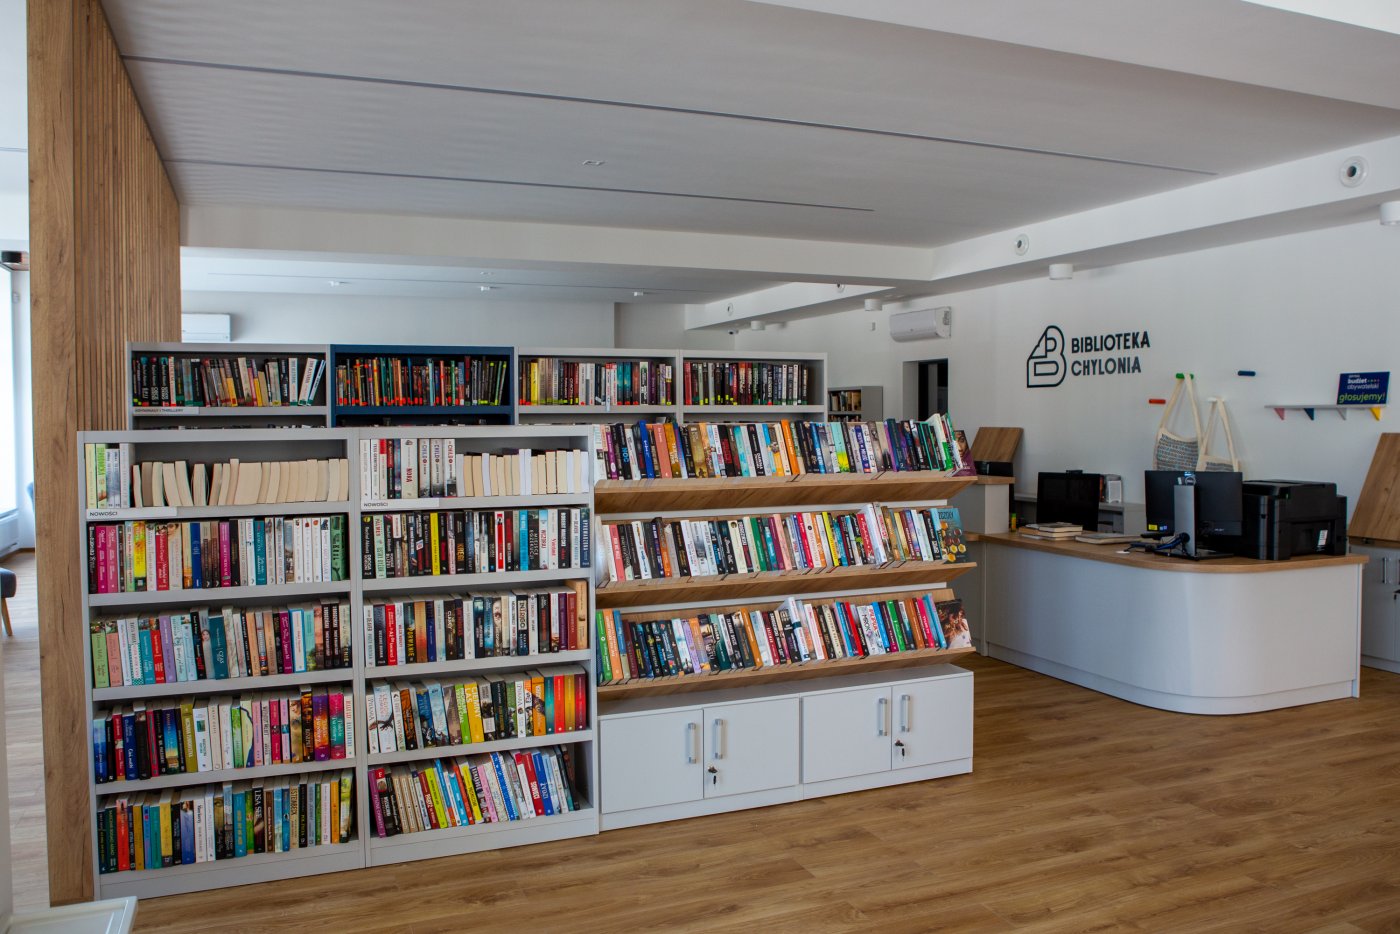 Na zdjęciu wnętrze fili Biblioteki Gdynia. Widoczne regały z książkami, po prawej stronie miejsce do obsługi czytelników. Podłogi i elementy mebli utrzymane w drewnie. Ściany koloru białego.